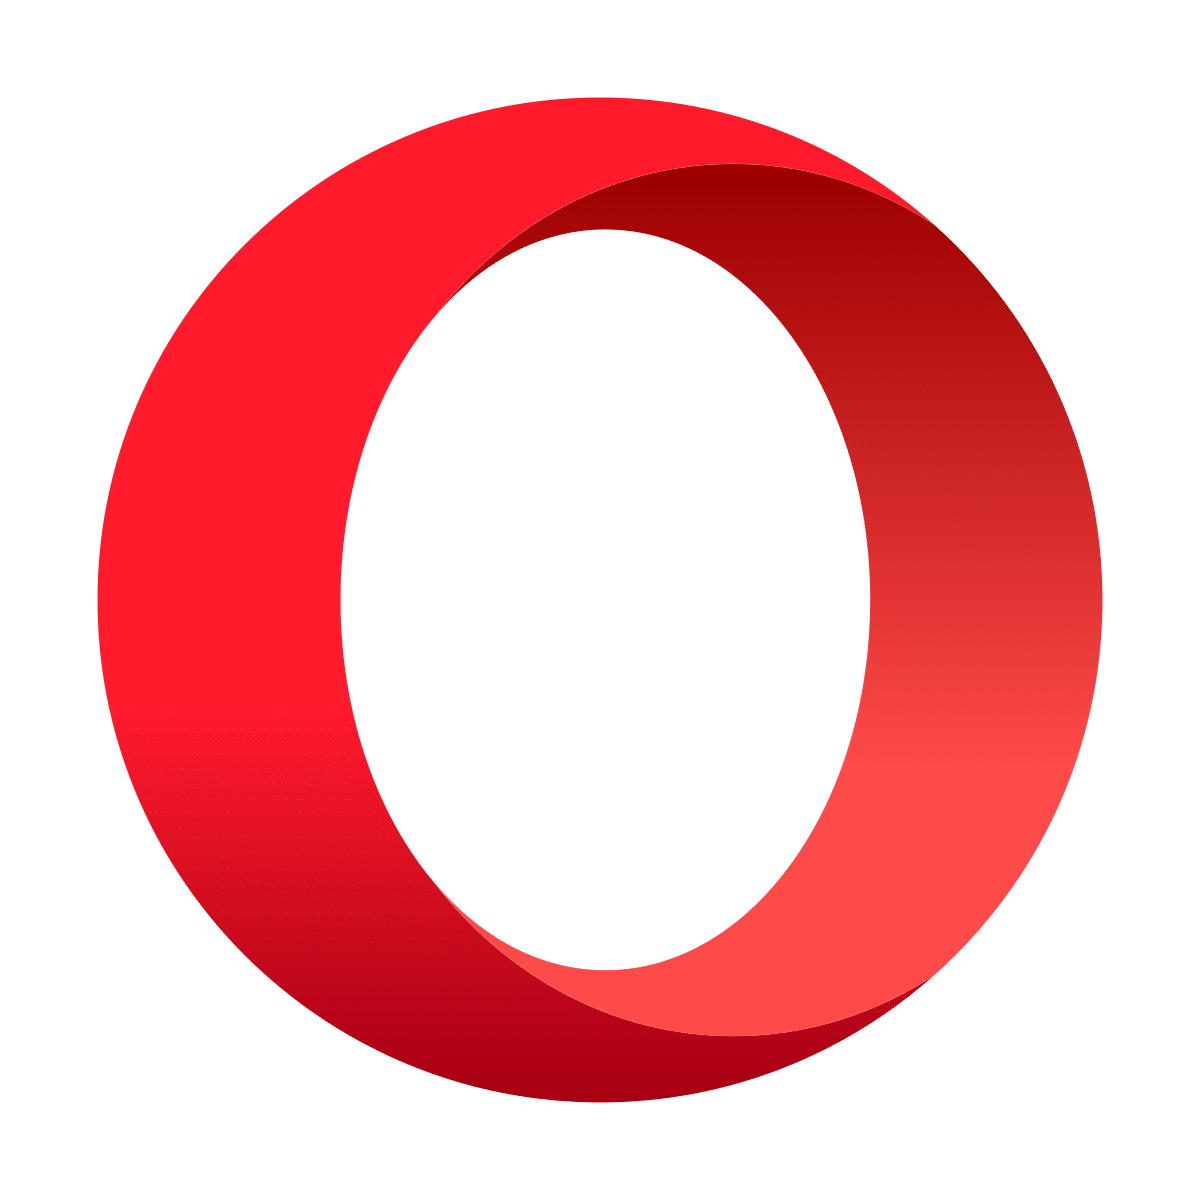 opera browser ethereum celo dappschaudhrytechcrunch